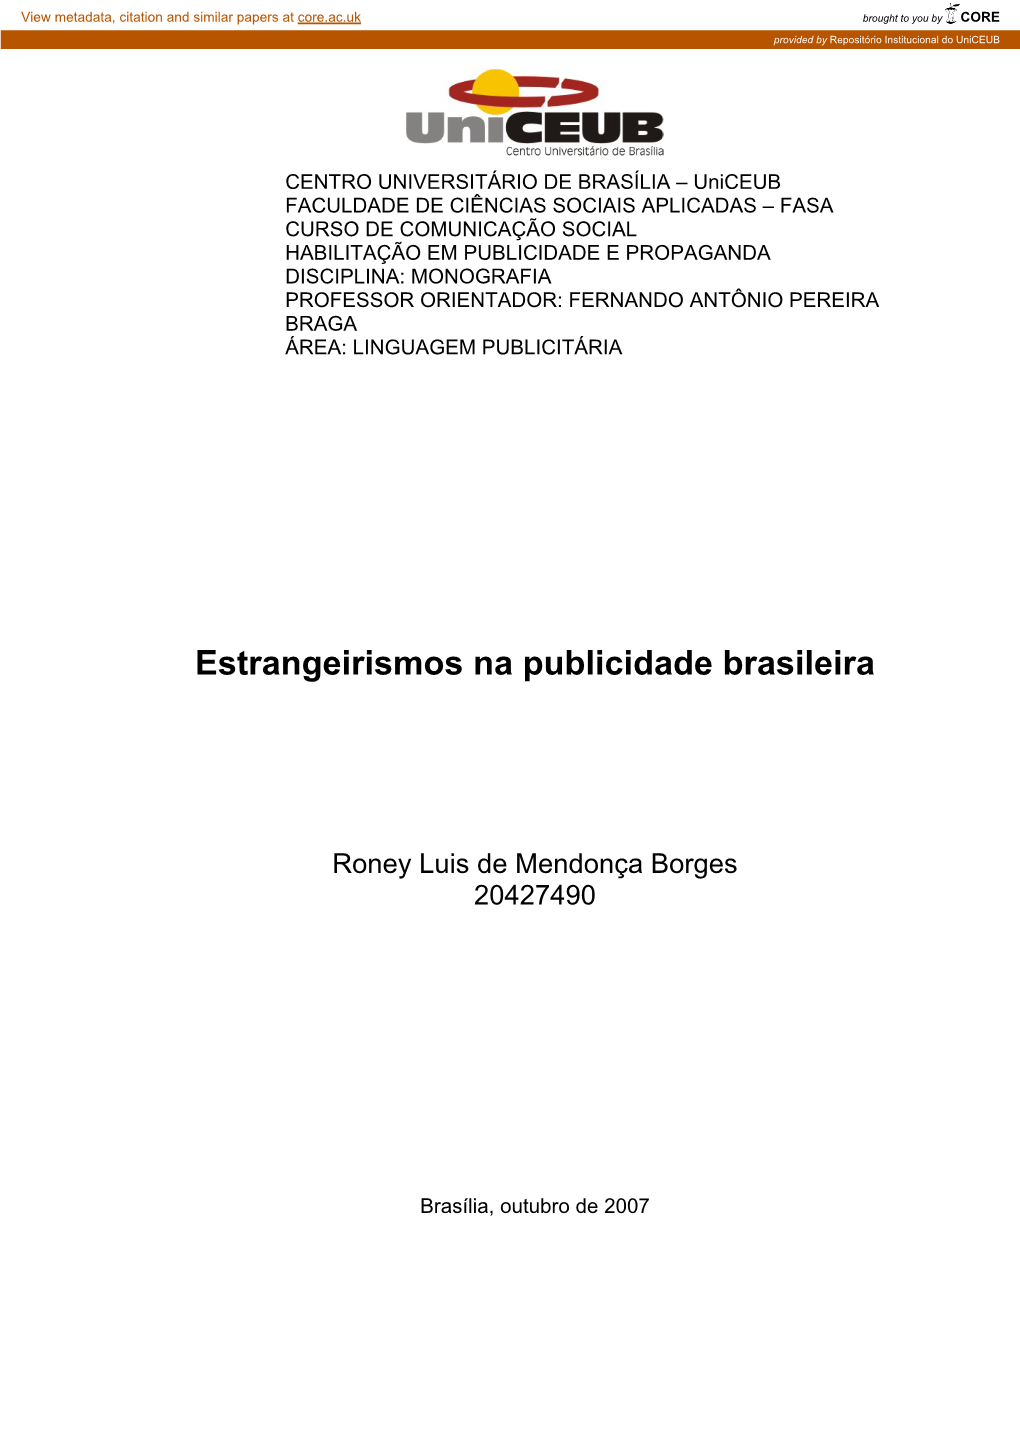 Estrangeirismos Na Publicidade Brasileira